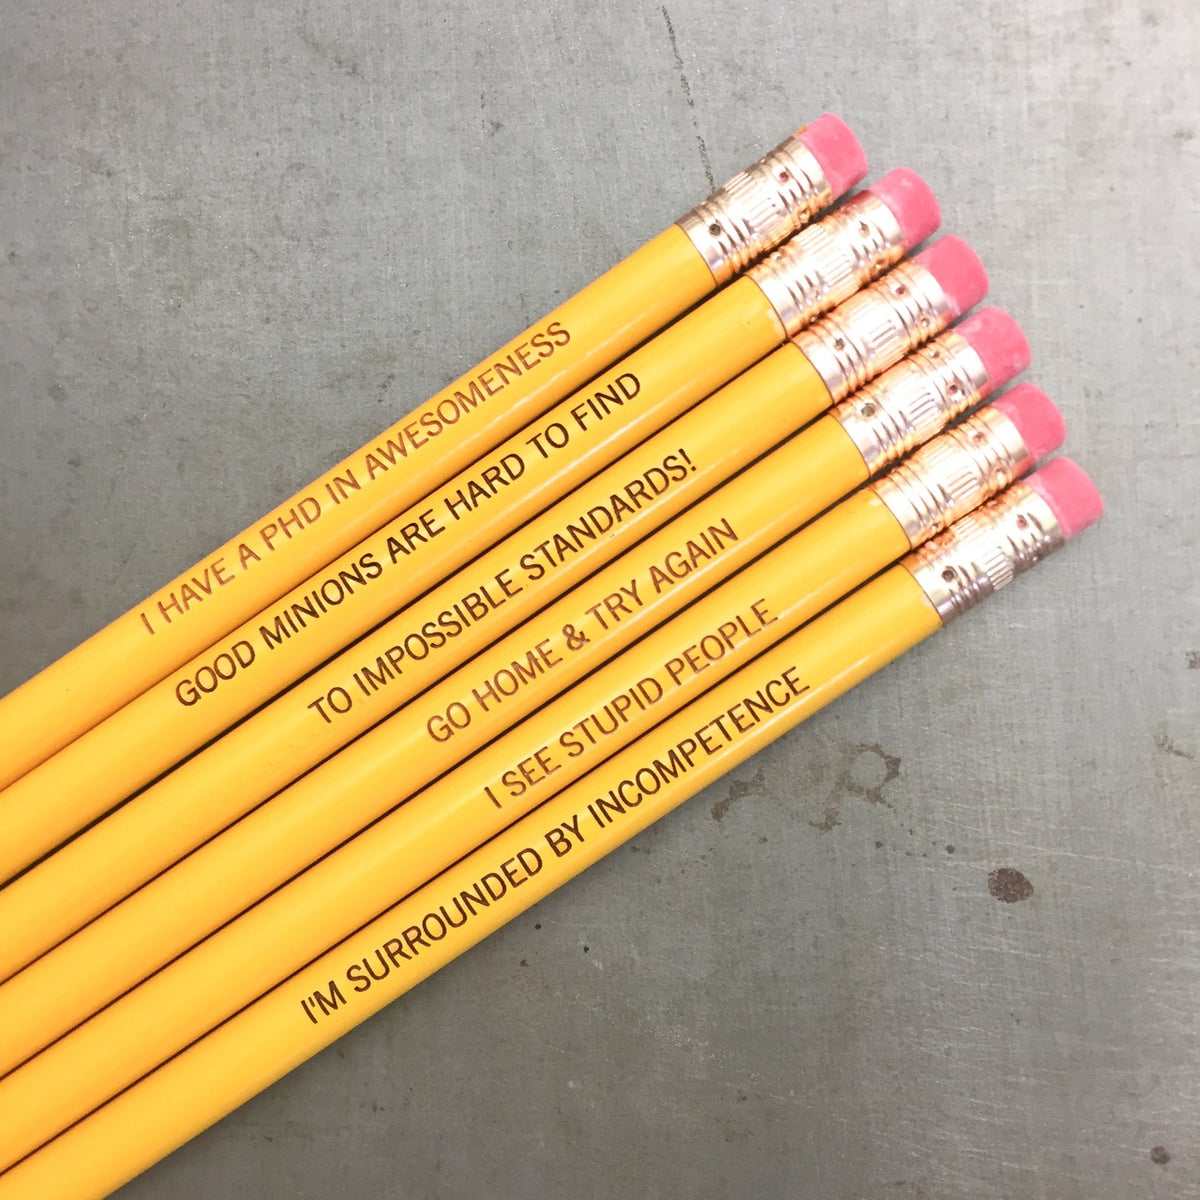 Hamiltwist Hamilton pencils in black (6 Pencil Set) – The Carbon Crusader